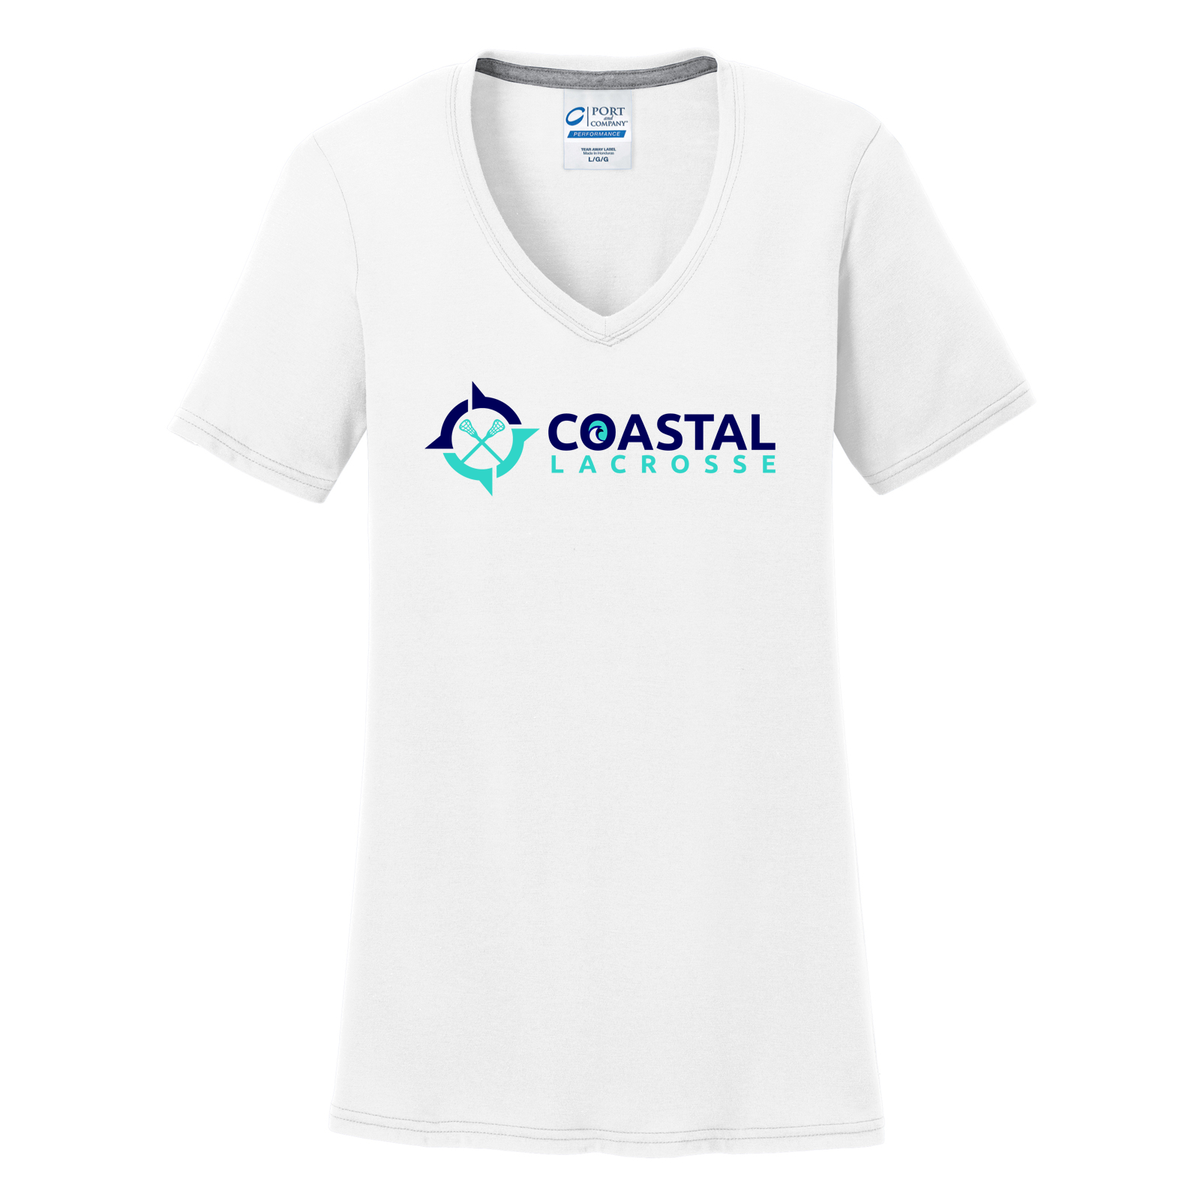 Coastal Lacrosse Women's T-Shirt